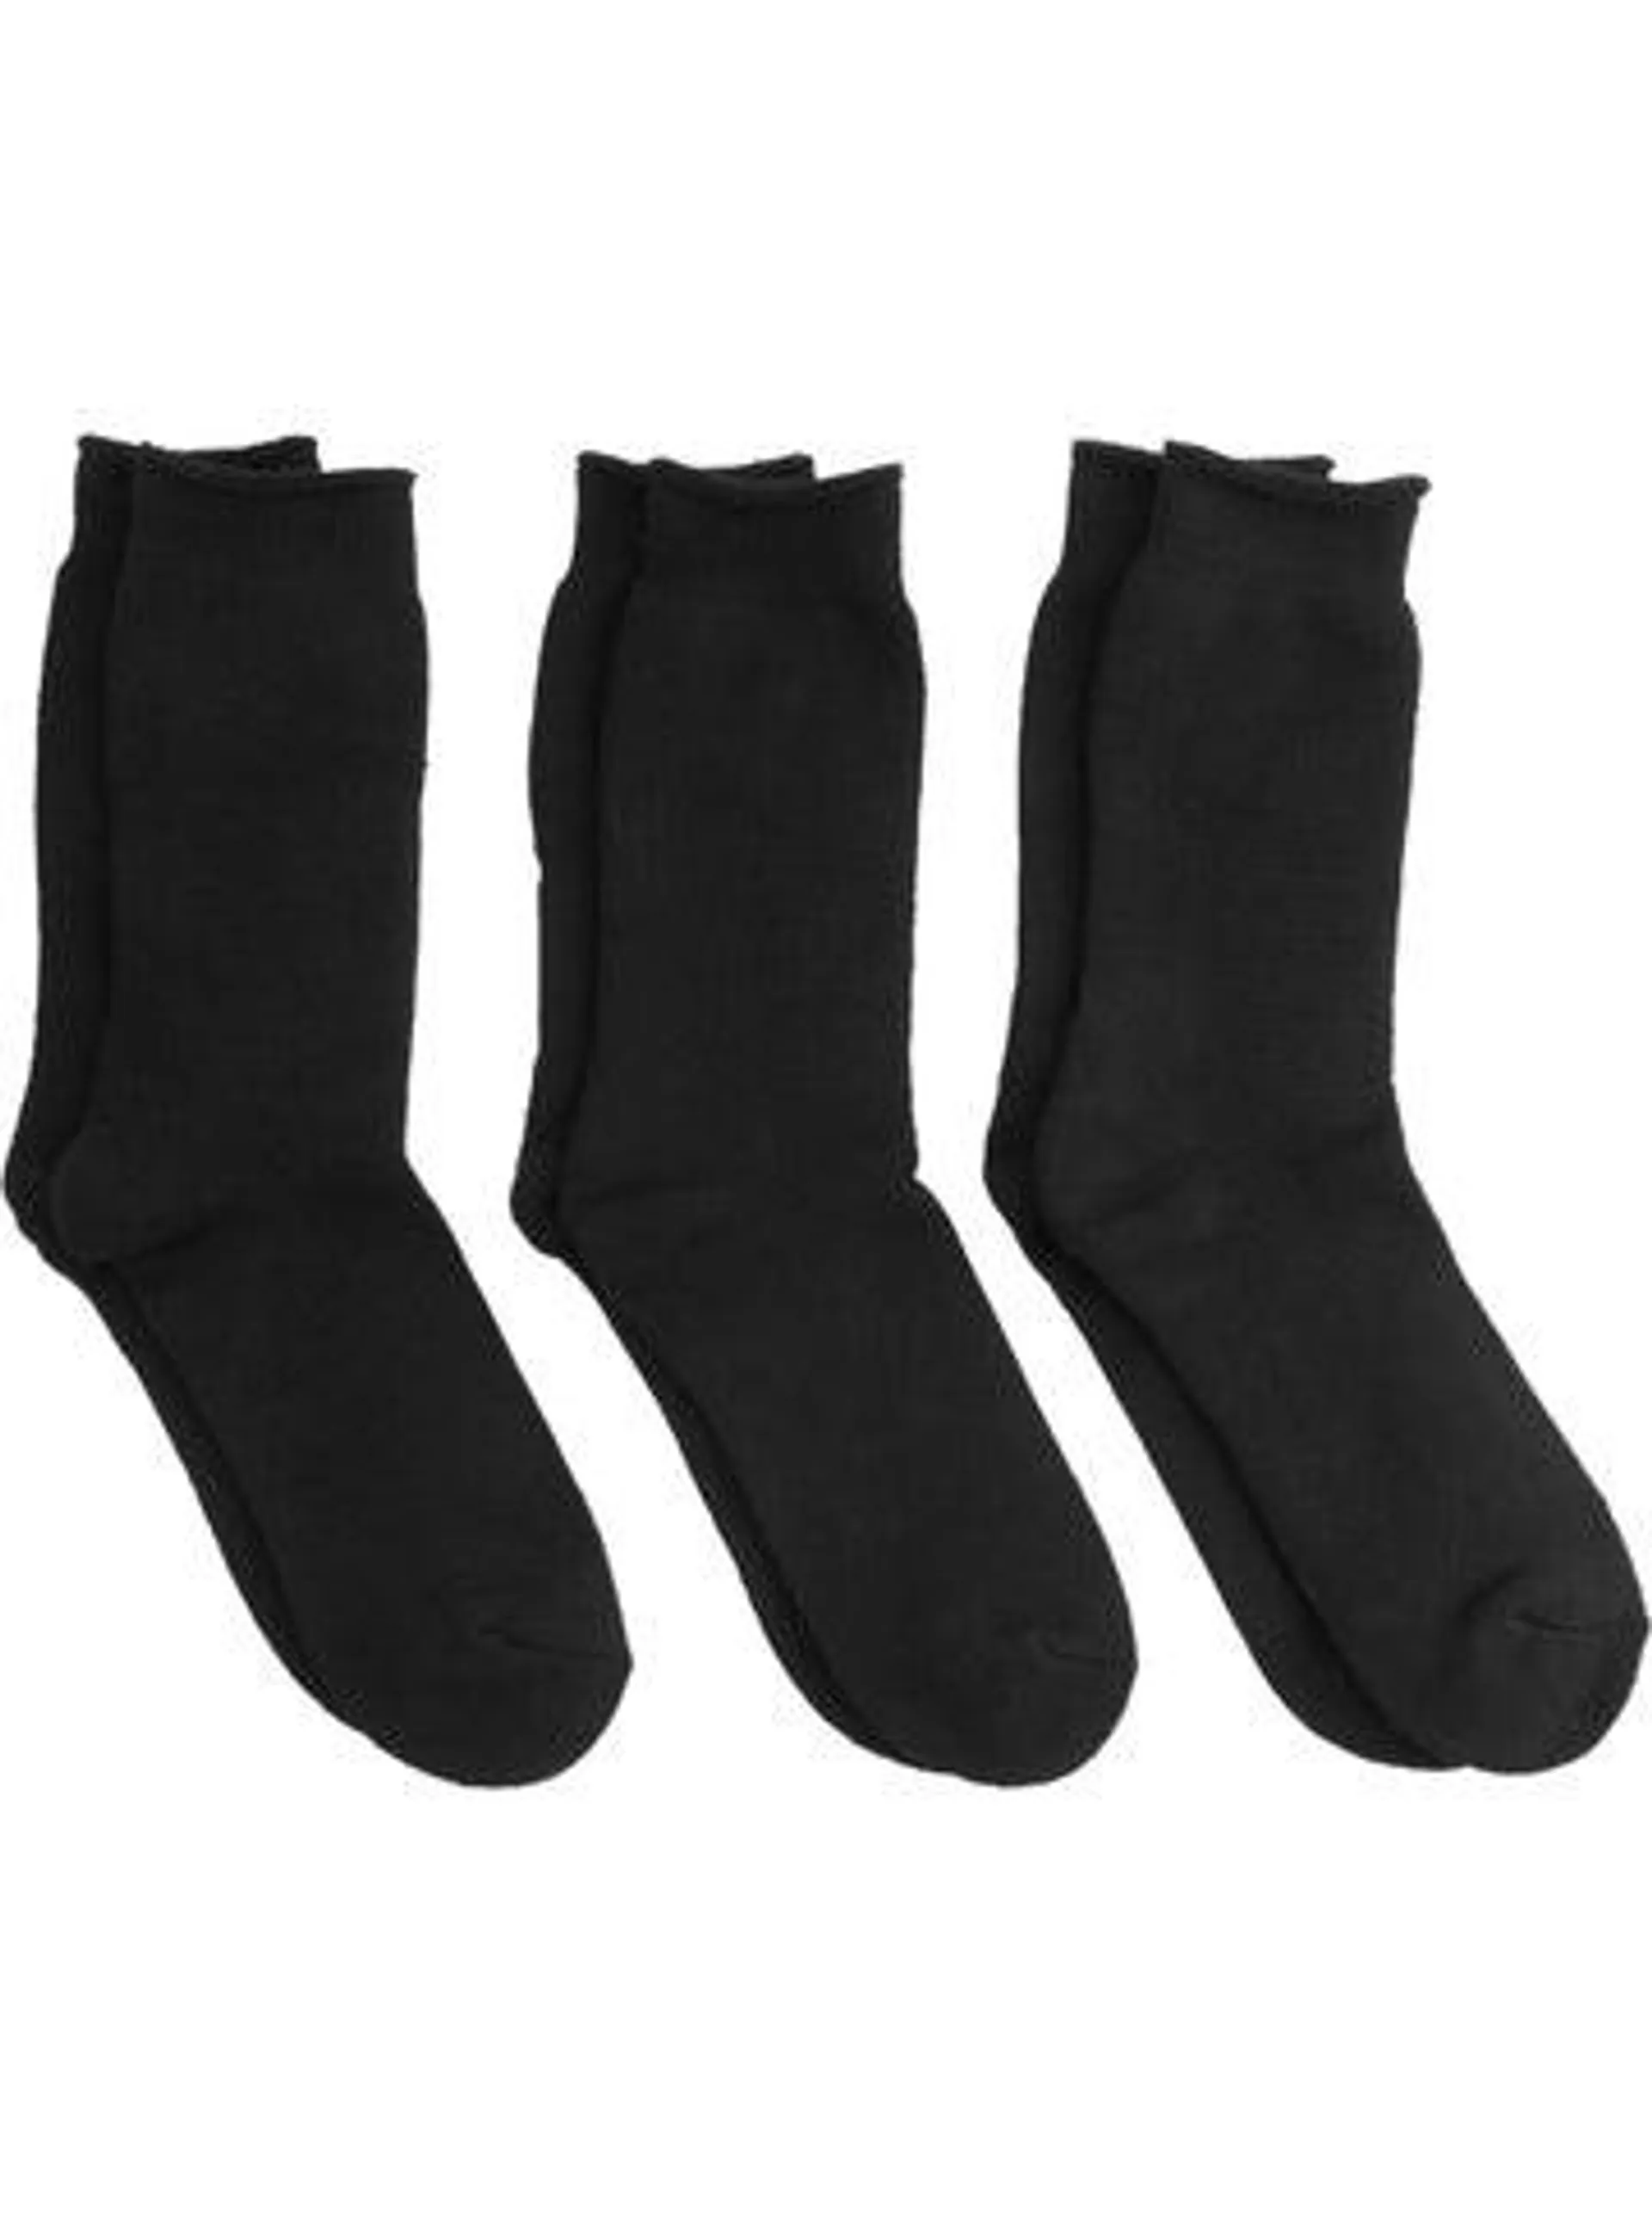 Men's 3 Pack Thermal Socks in Black